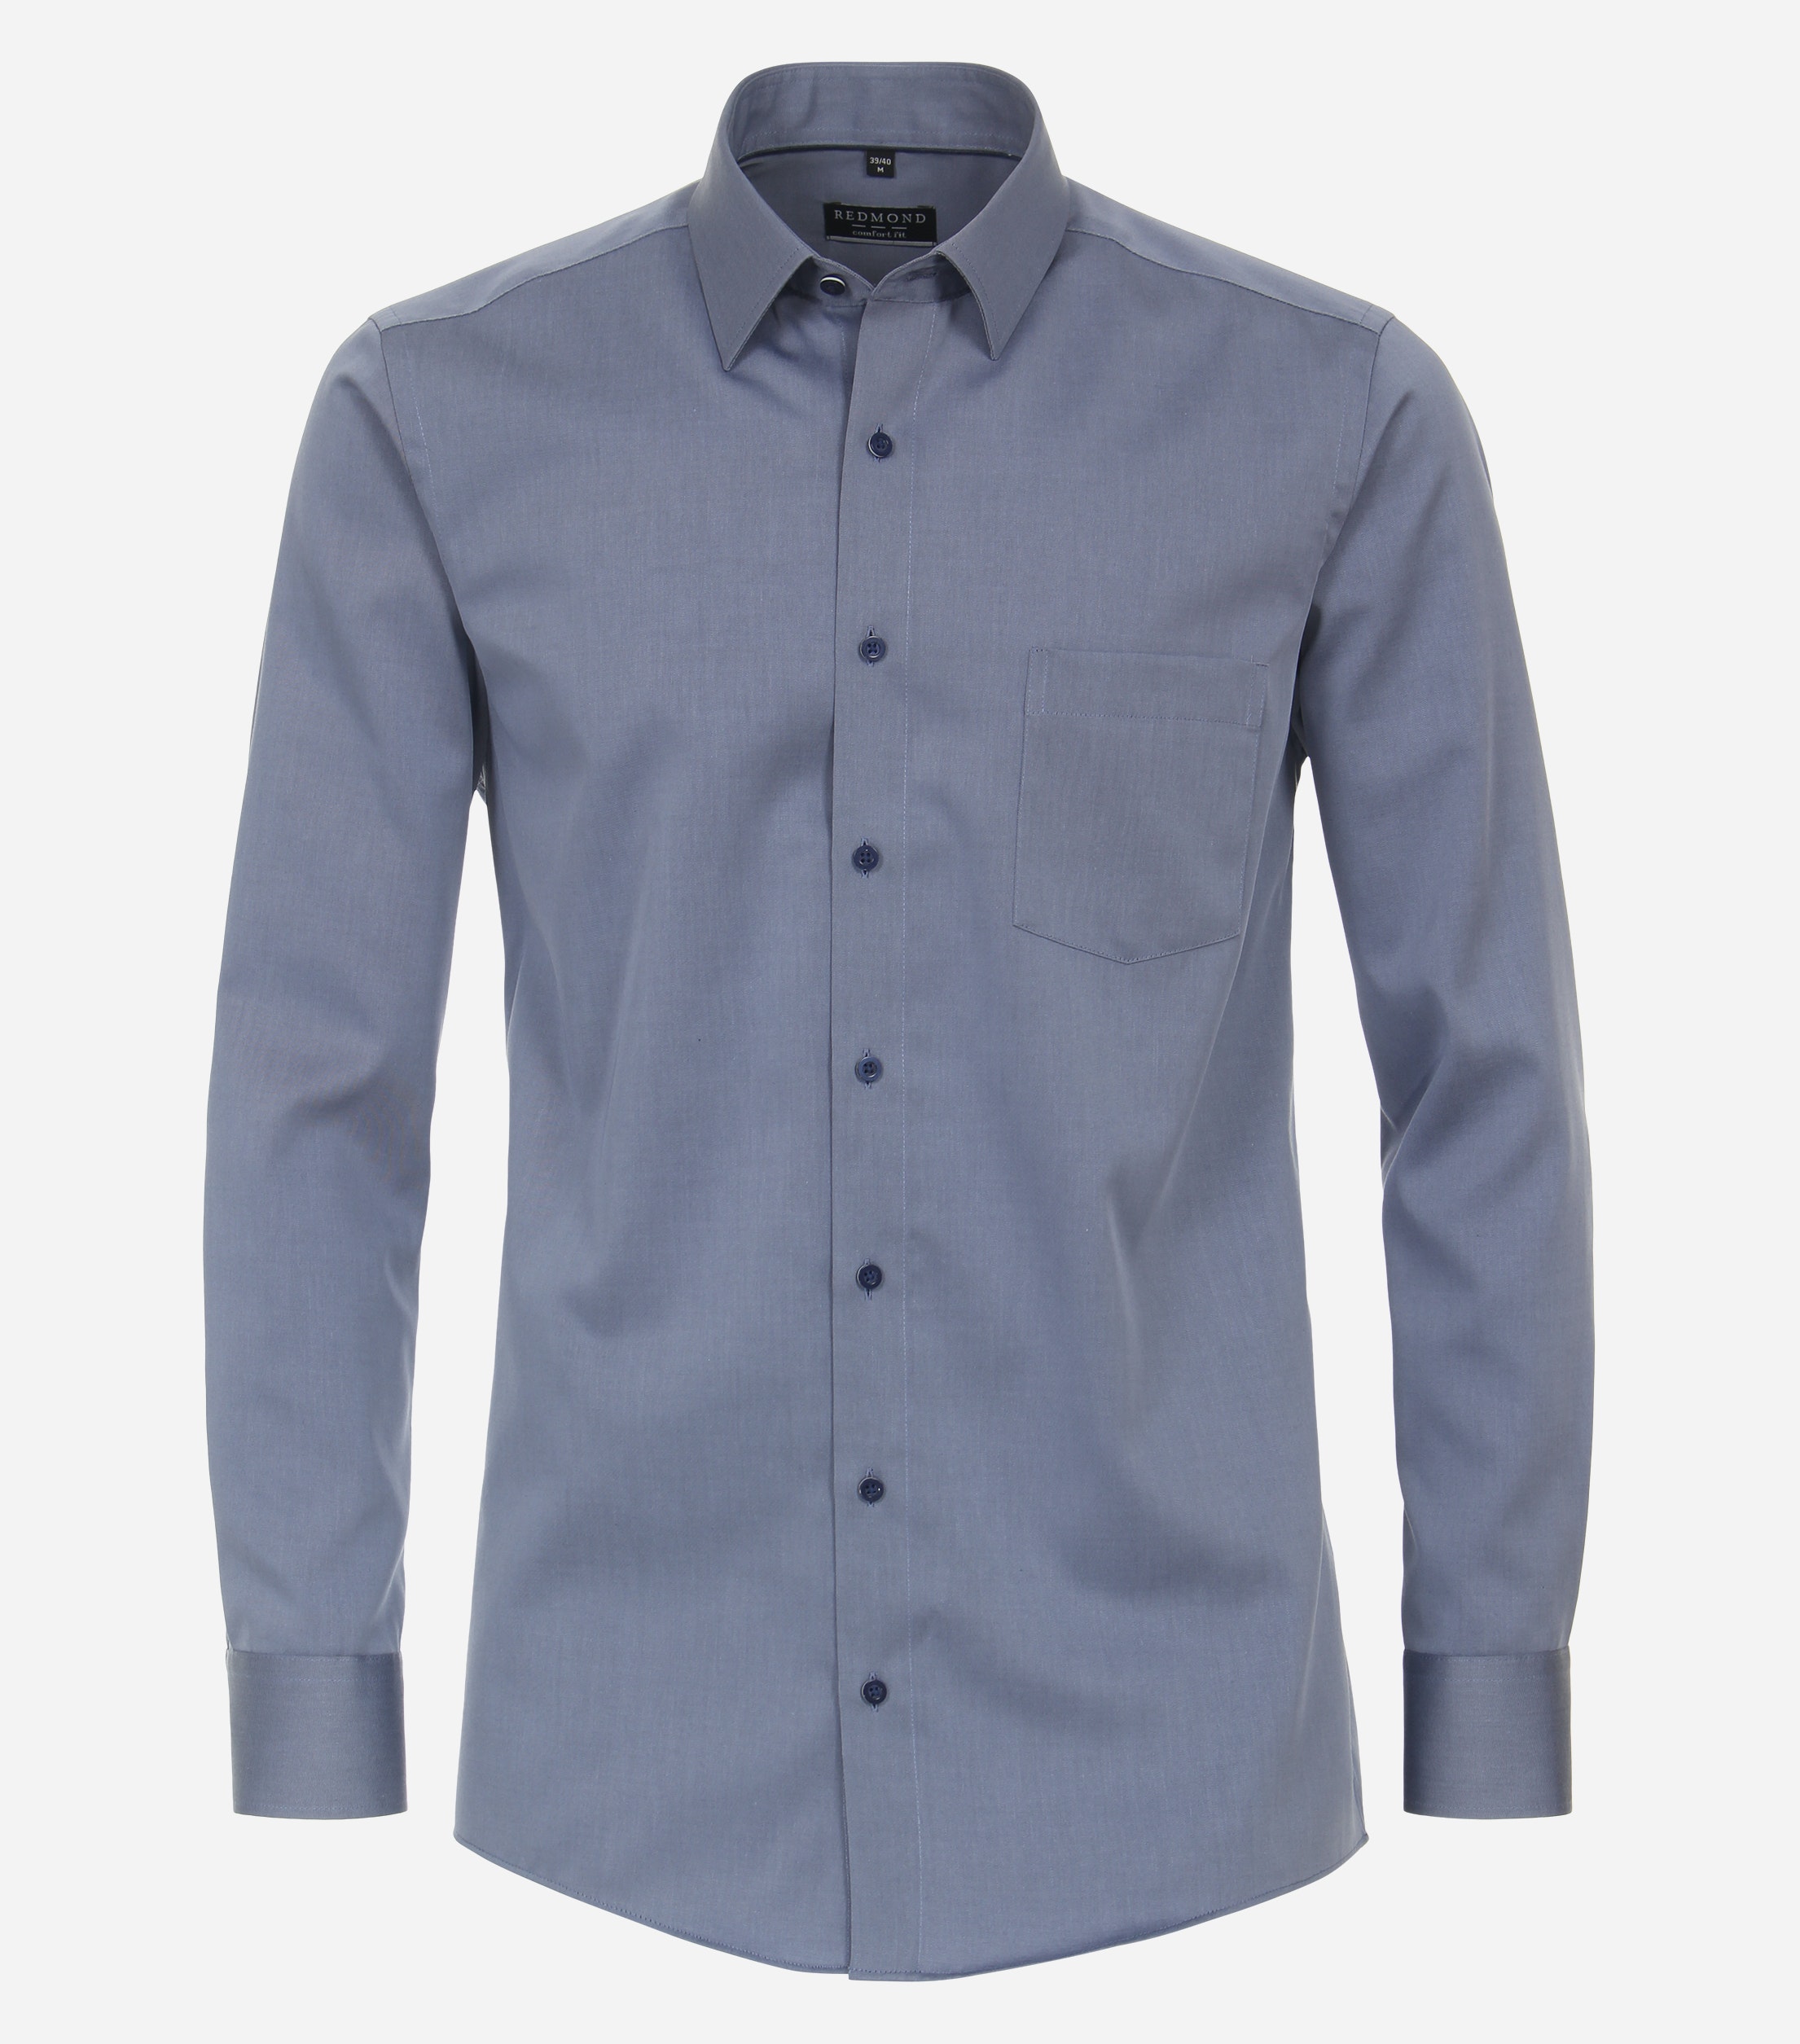 Redmond comfort fit overhemd, popeline, blauw